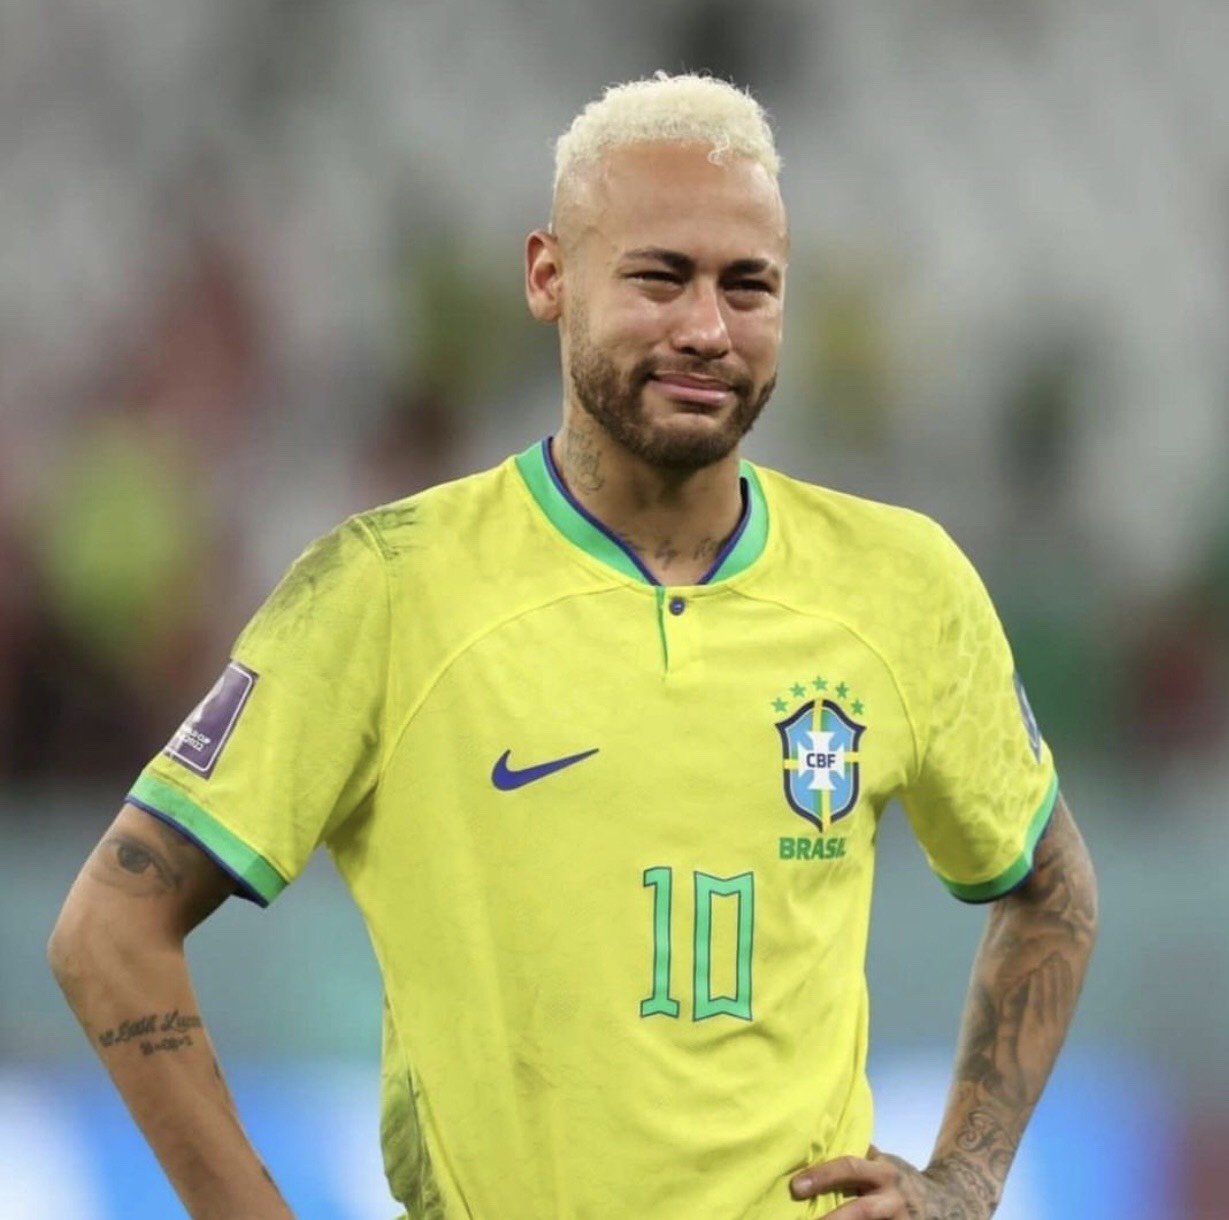 Bố của Neymar ví con trai như phượng hoàng - VnExpress Thể thao